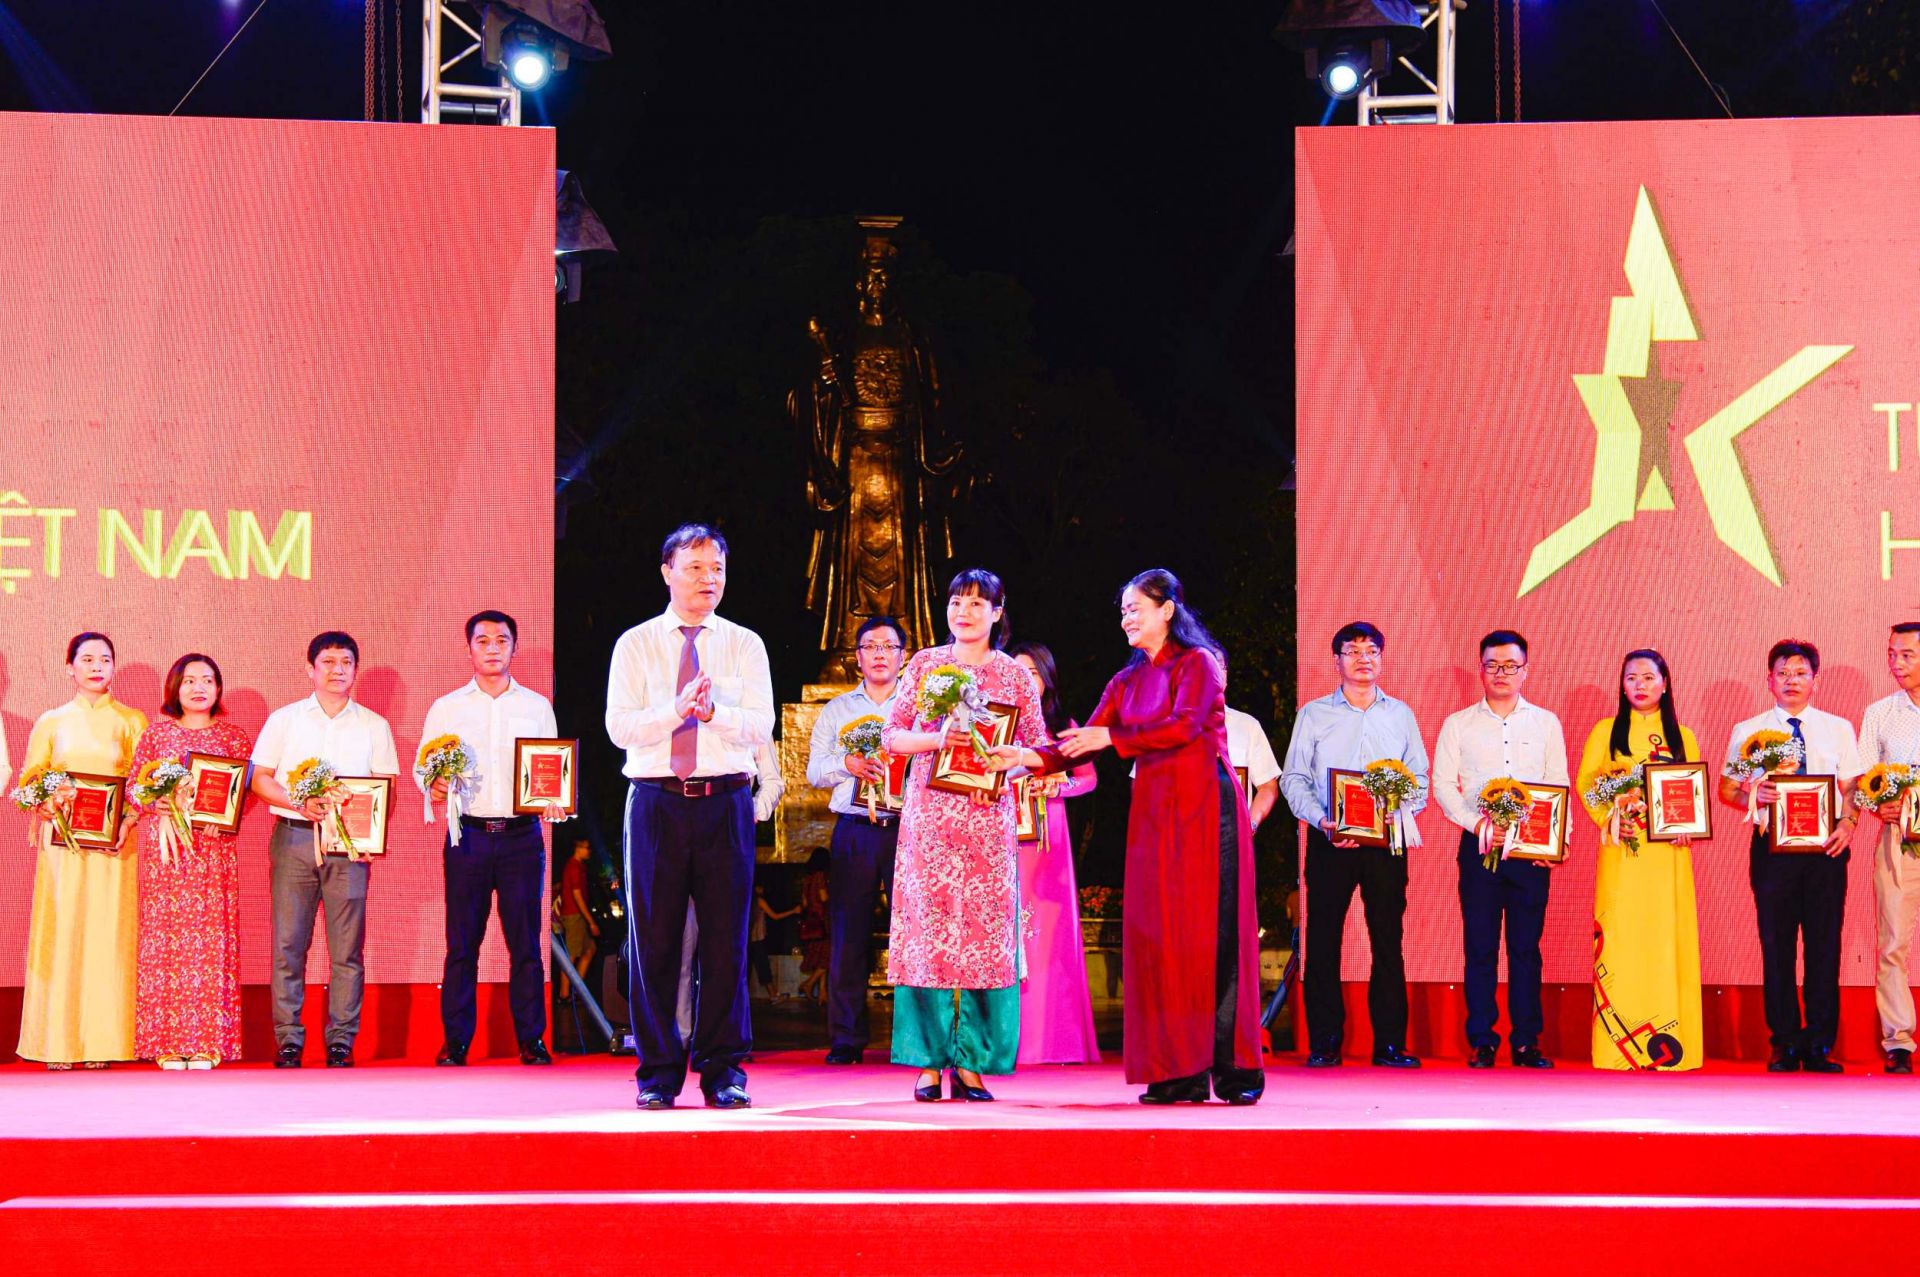 Thứ trưởng Bộ Công Thương Đỗ Thắng Hải (trái) và Phó Chủ tịch Hội Liên hiệp Phụ nữ Việt Nam Đỗ Thị Thu Thảo (phải) trao kỷ niệm chương cho đại diện Công ty Bánh kẹo Hải hà Kotobuki